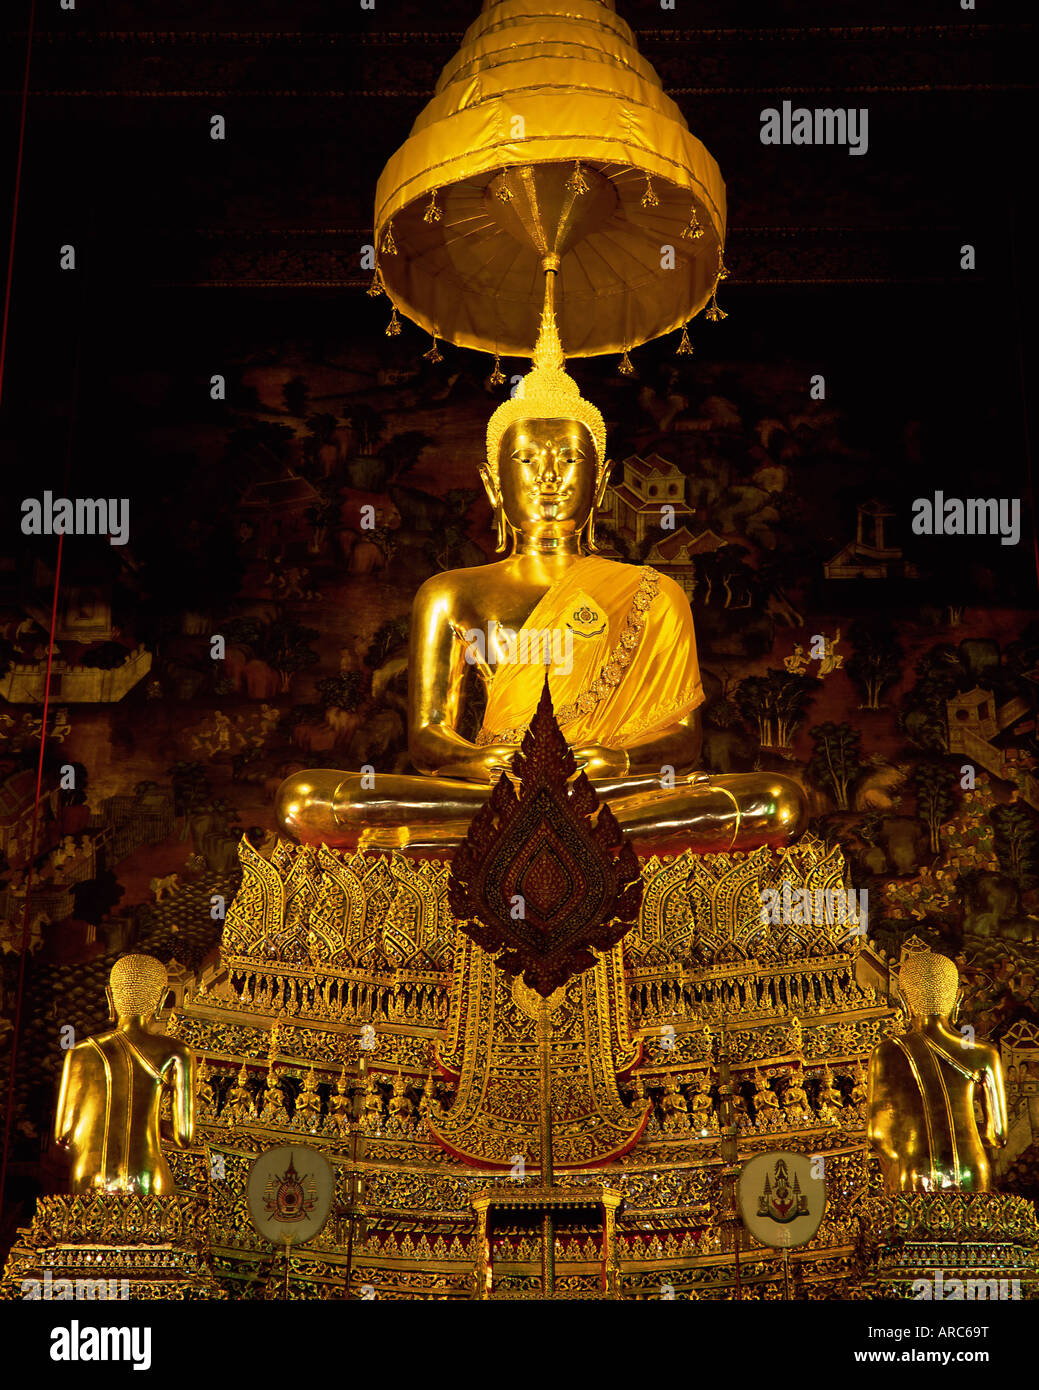 Statue de Bouddha, Wat Pho (Wat Po) (Wat Phra Chetuphon), Bangkok, Thaïlande, Asie du Sud-Est, Asie Banque D'Images